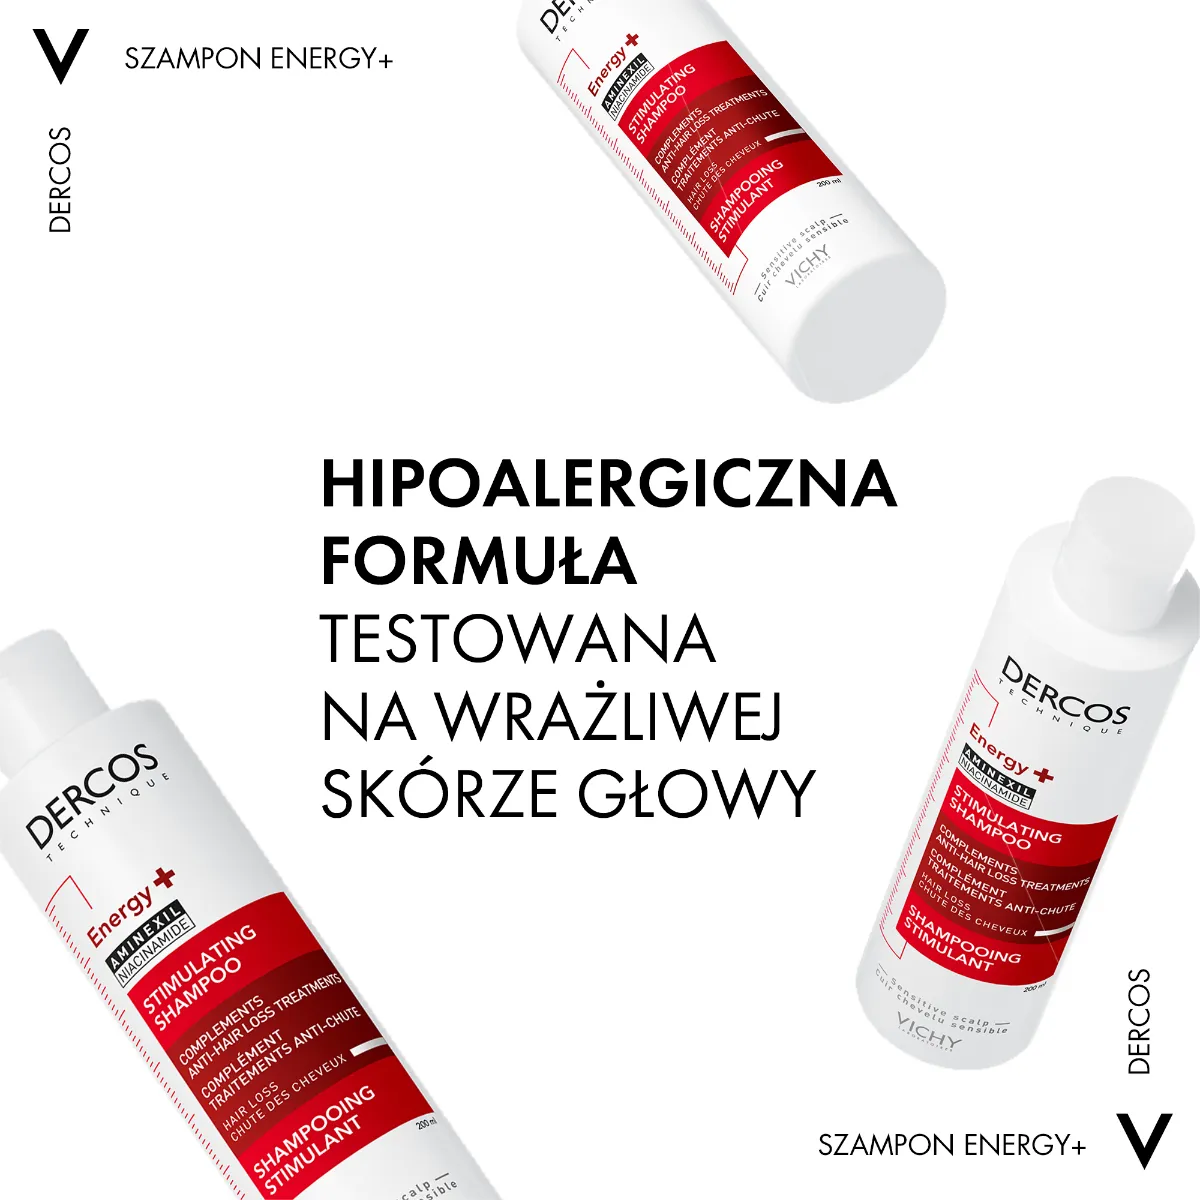 Vichy Dercos, szampon energetyzujący wspierający kurację na wypadanie włosów, 200 ml 